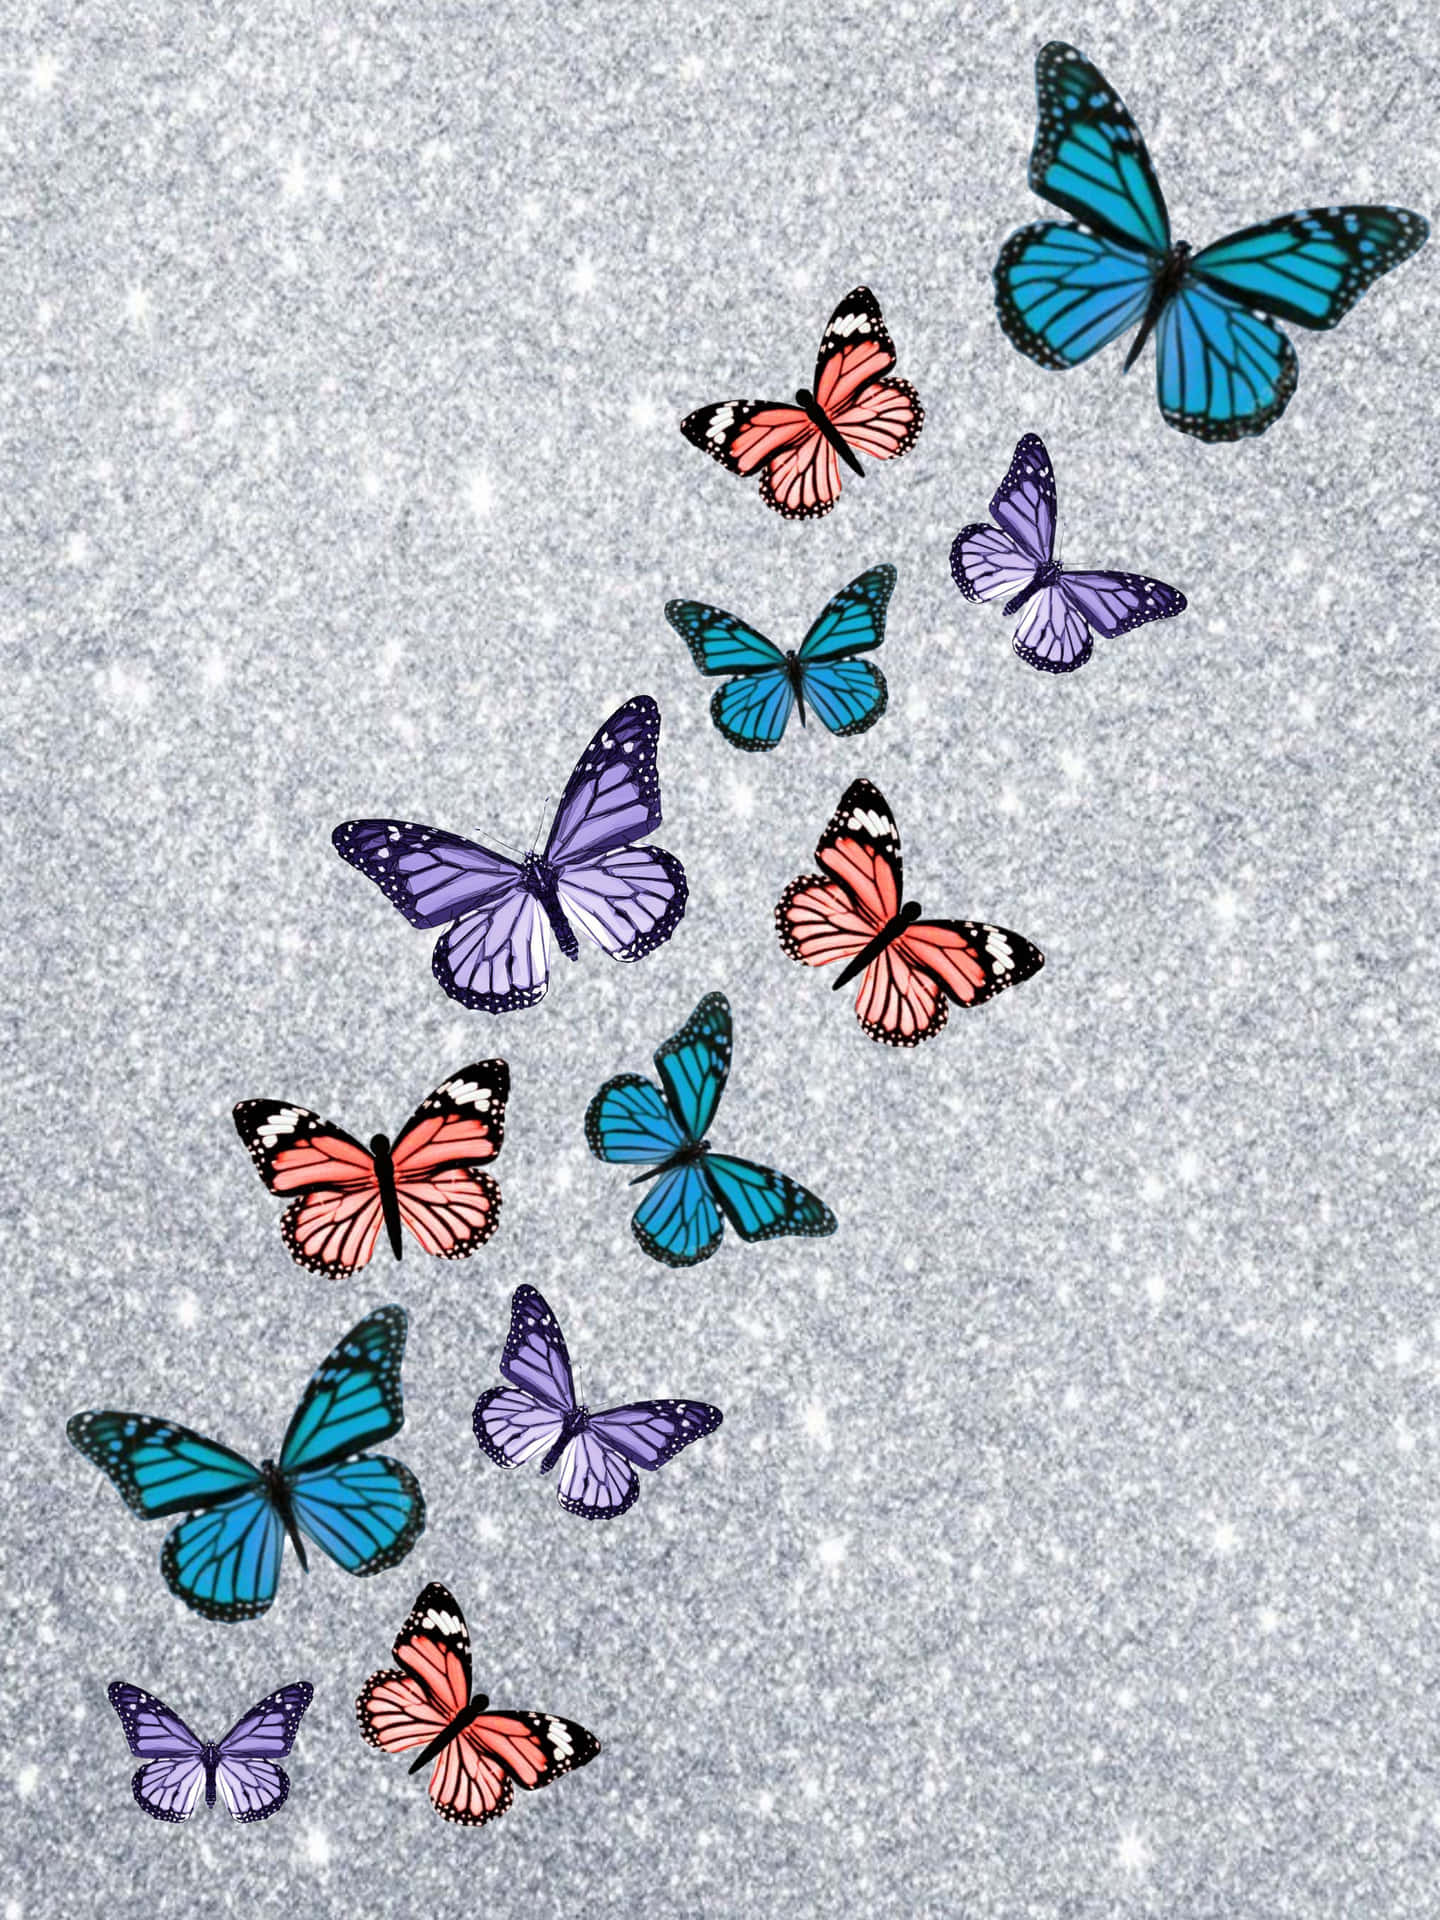 Glitzernderfunkelnder Schmetterling Fliegt Durch Ein Blumenfeld. Wallpaper